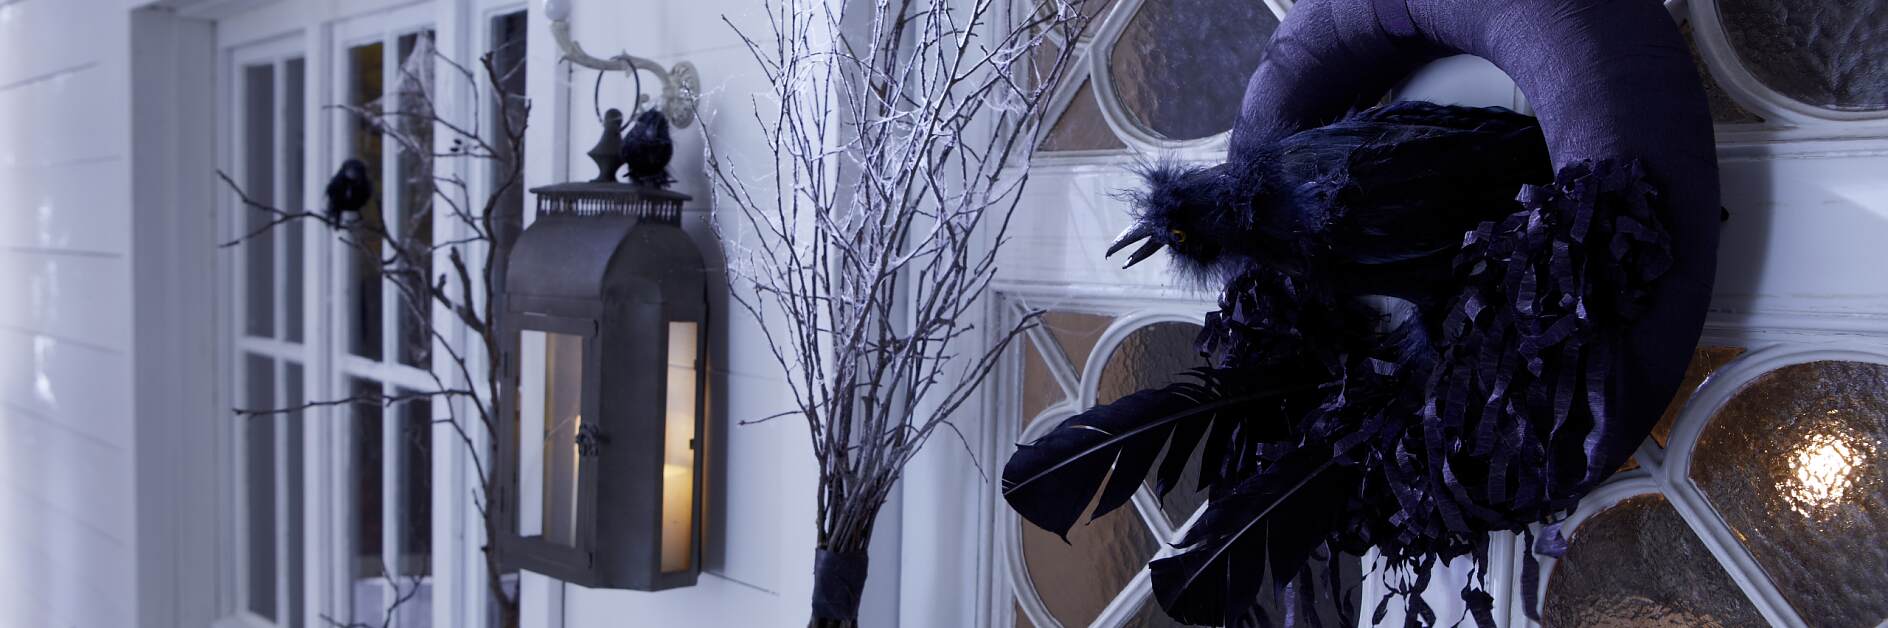 Spooky Raven Wreath Design Idea